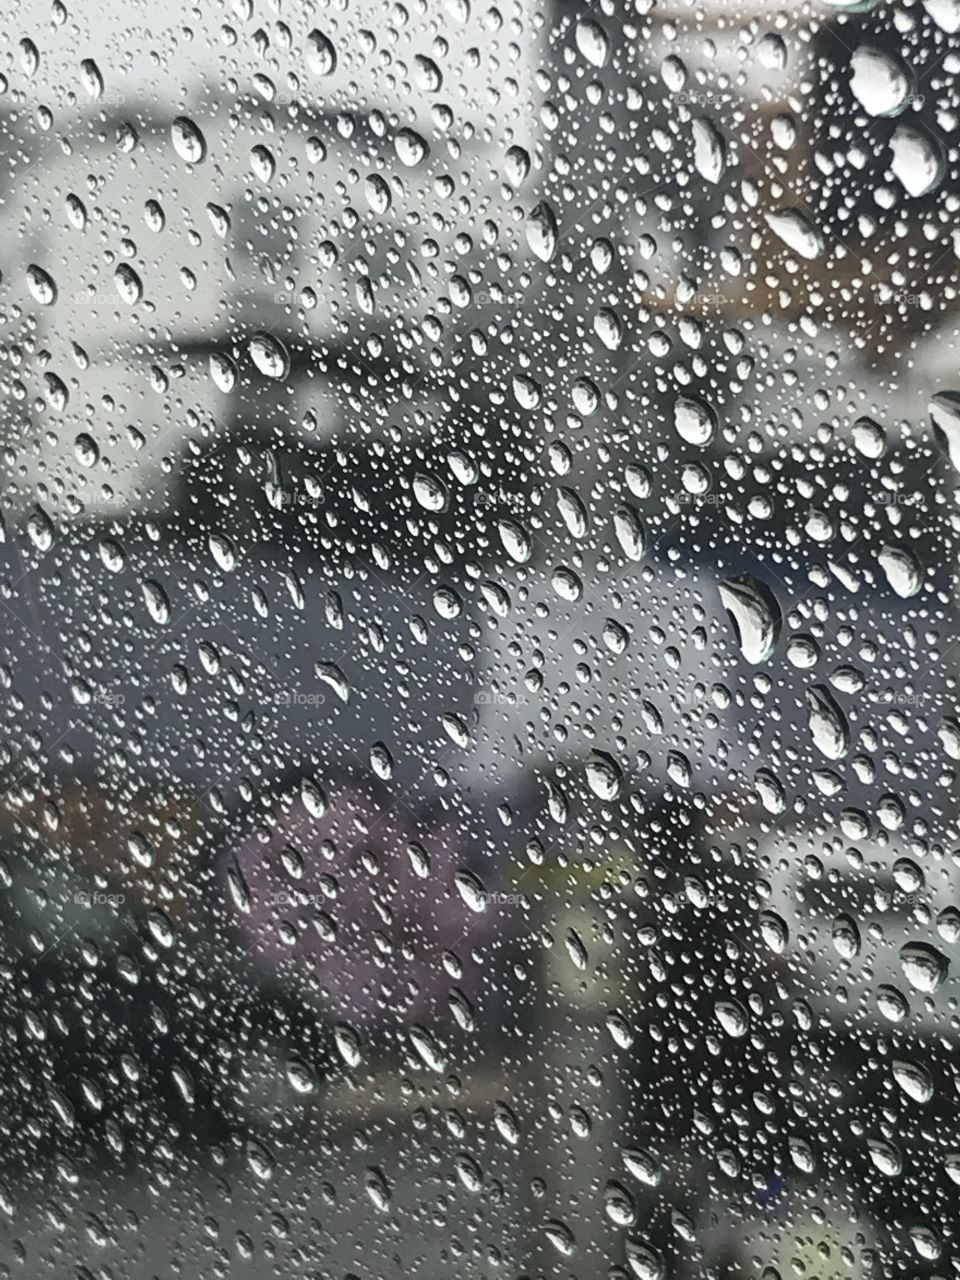 Rainy Day in Brooklyn 